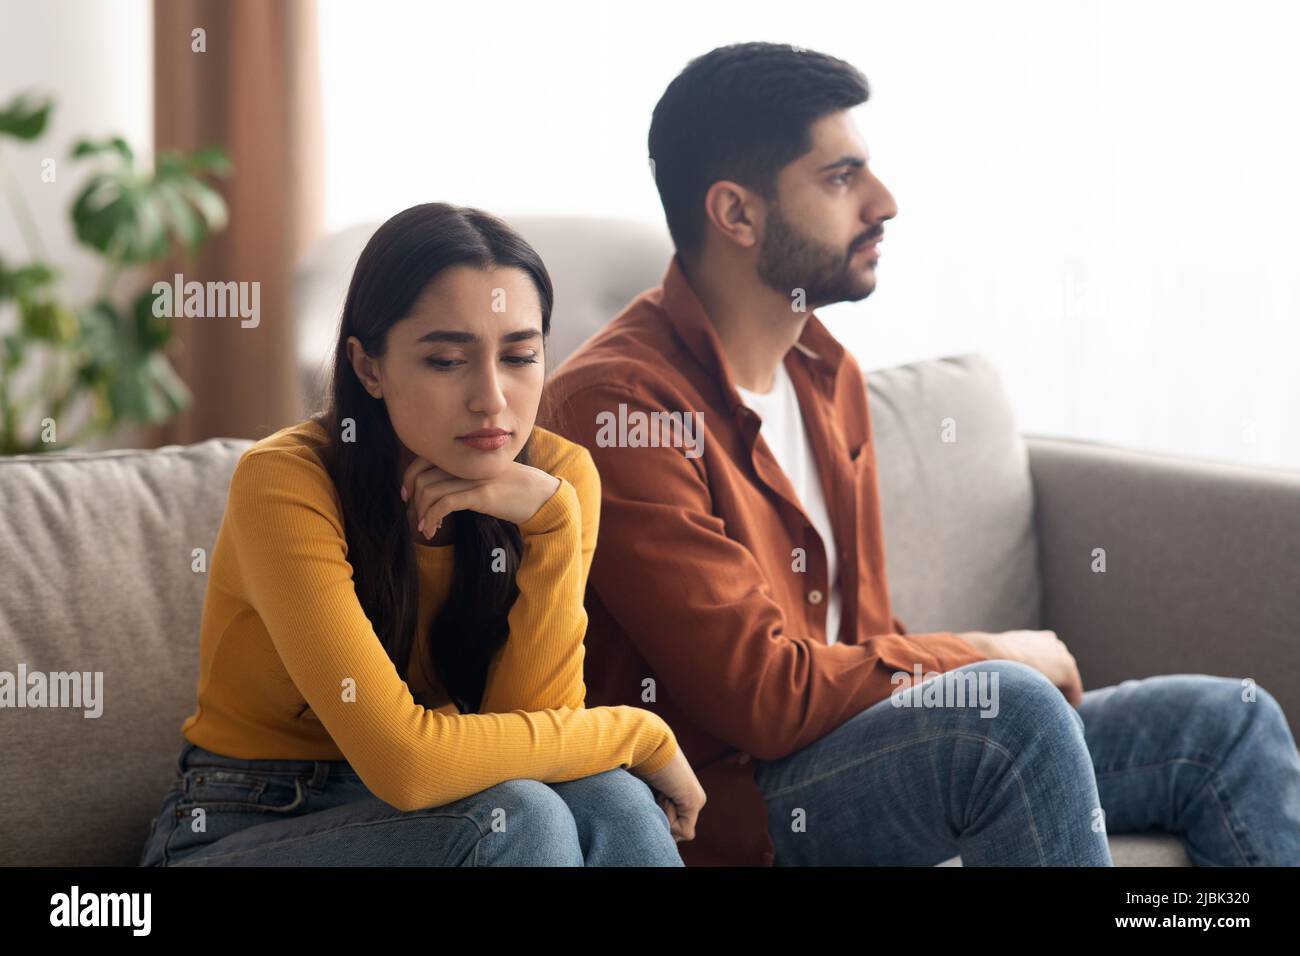 Malheureux couple arabe assis sur le canapé intérieur, ayant des problèmes de relation Banque D'Images